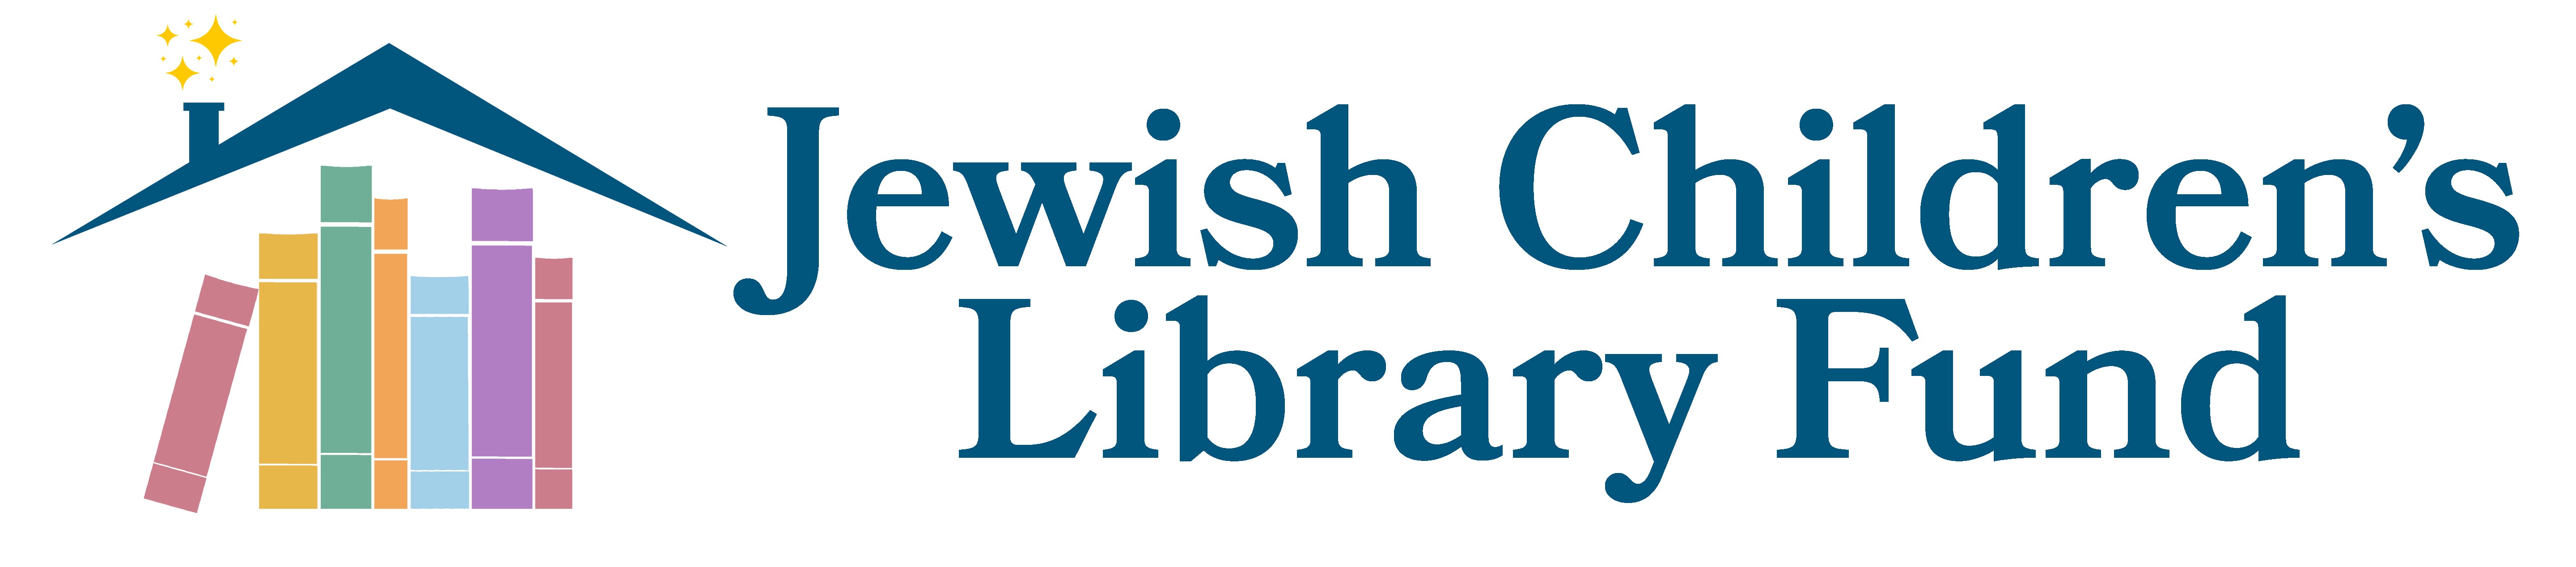 Jewish Children's Library Fund